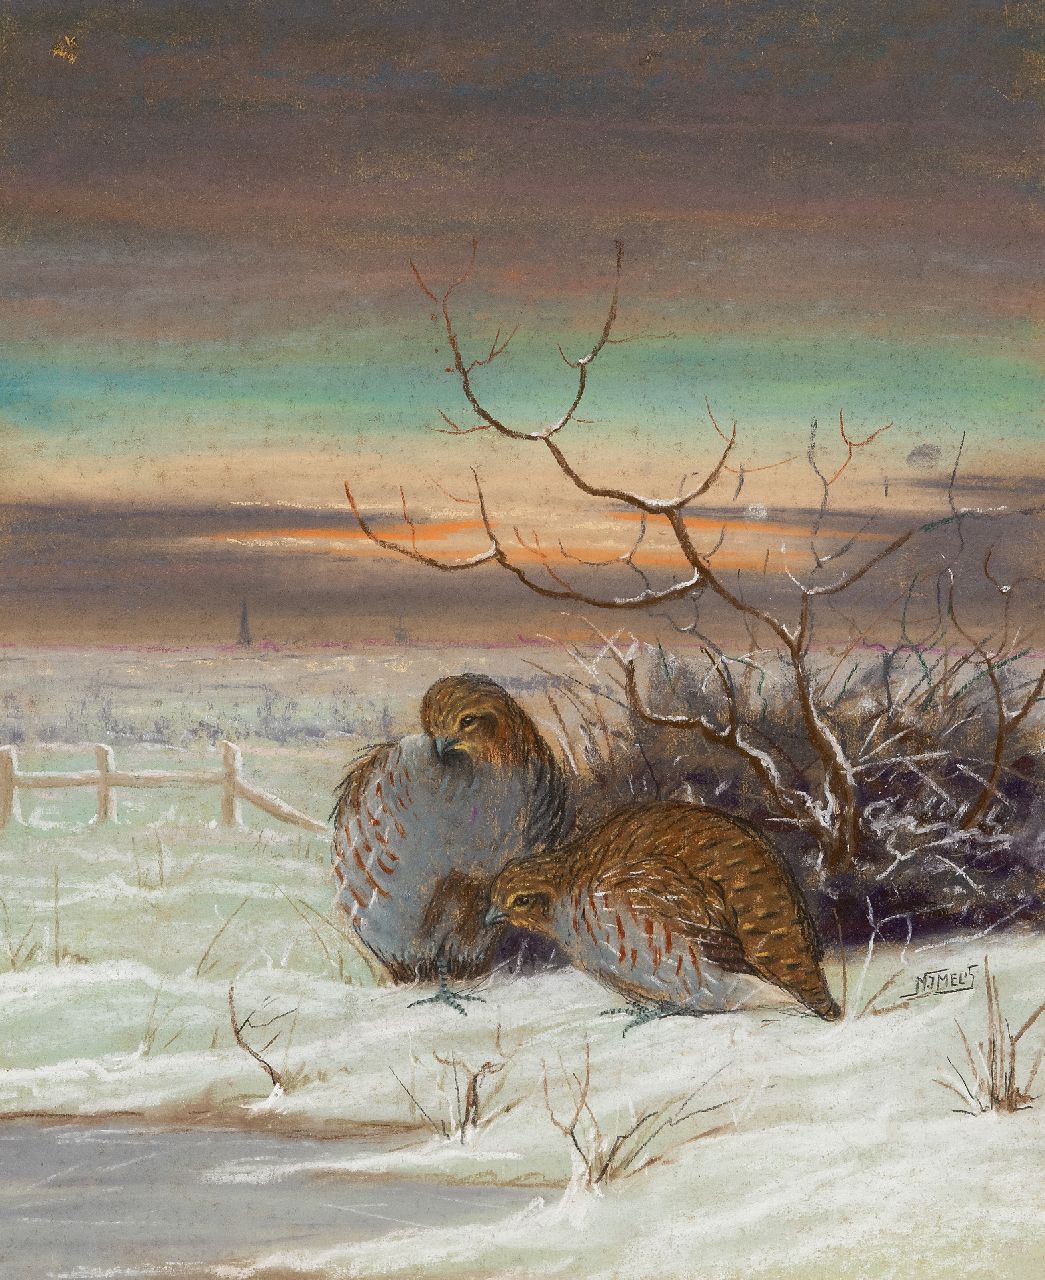 Melis N.J.  | Nicolaas Jan Melis | Aquarellen en tekeningen te koop aangeboden | Kwartels in een sneeuwlandschap, krijt en aquarel op board 48,8 x 41,0 cm, gesigneerd rechts van het midden